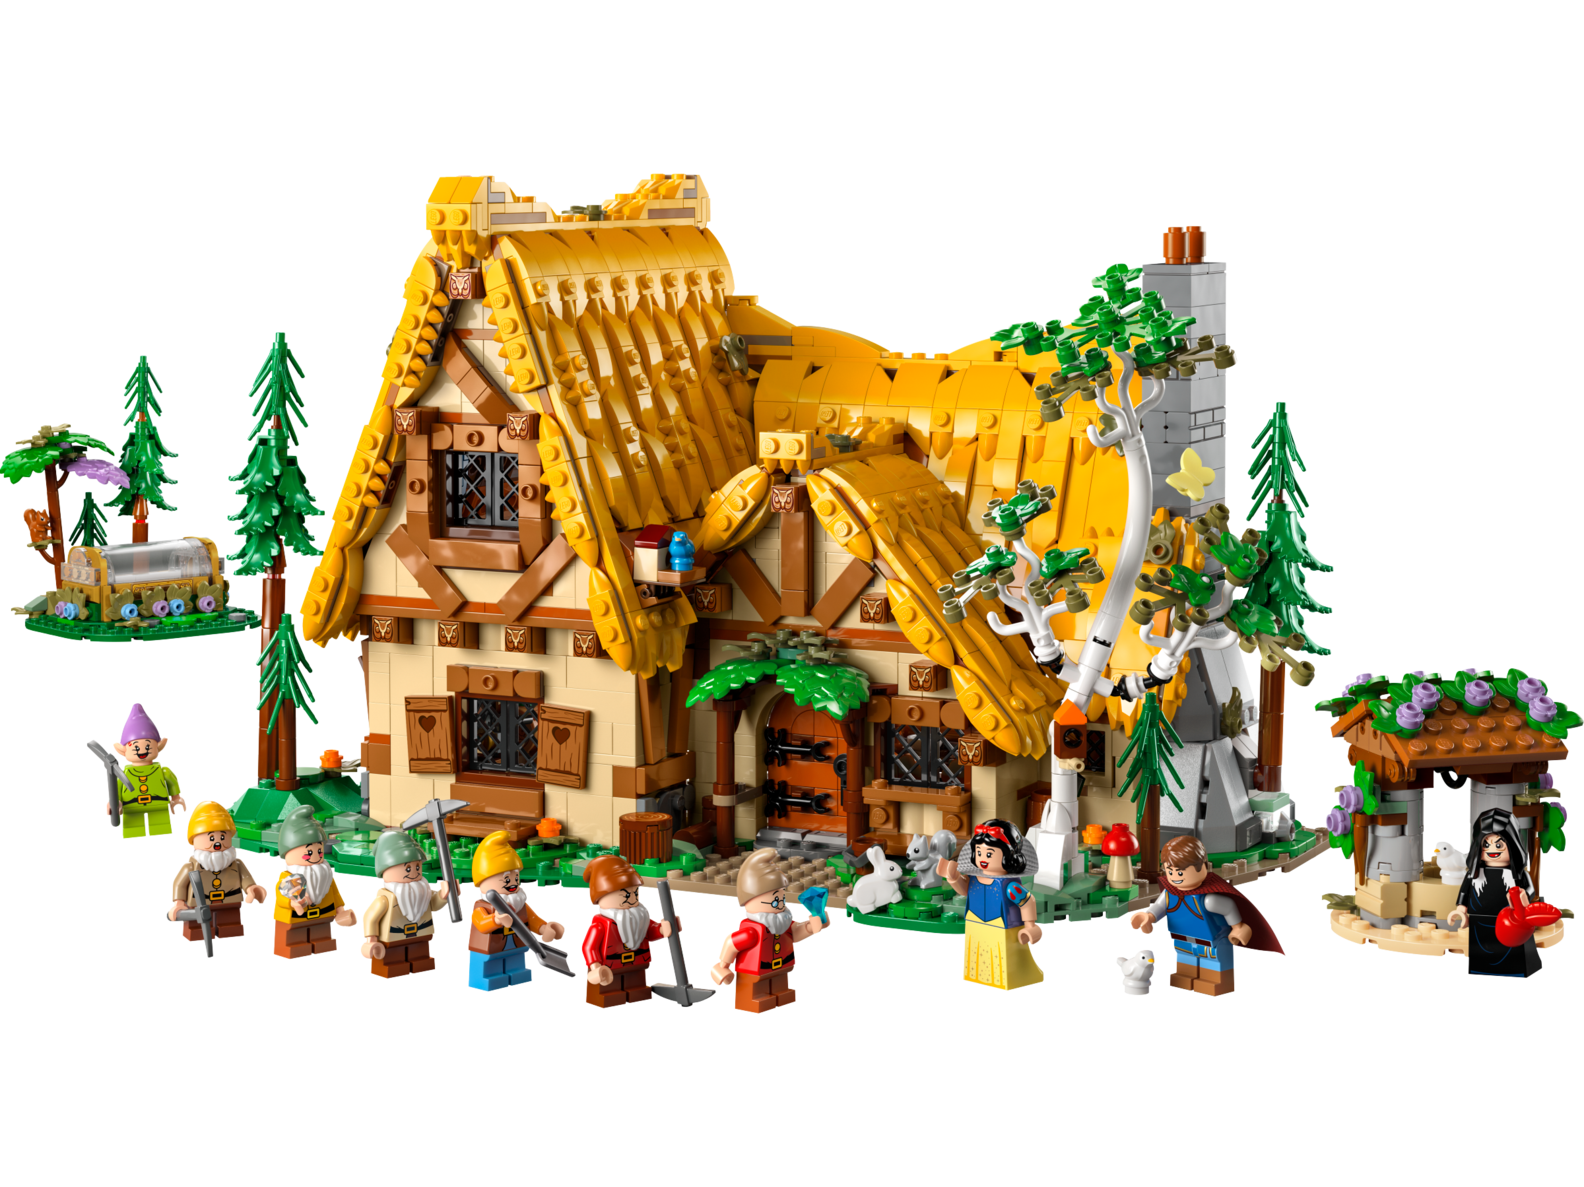 Die Hütte von Schneewittchen und den sieben Zwergen für 219,99€ in Lego